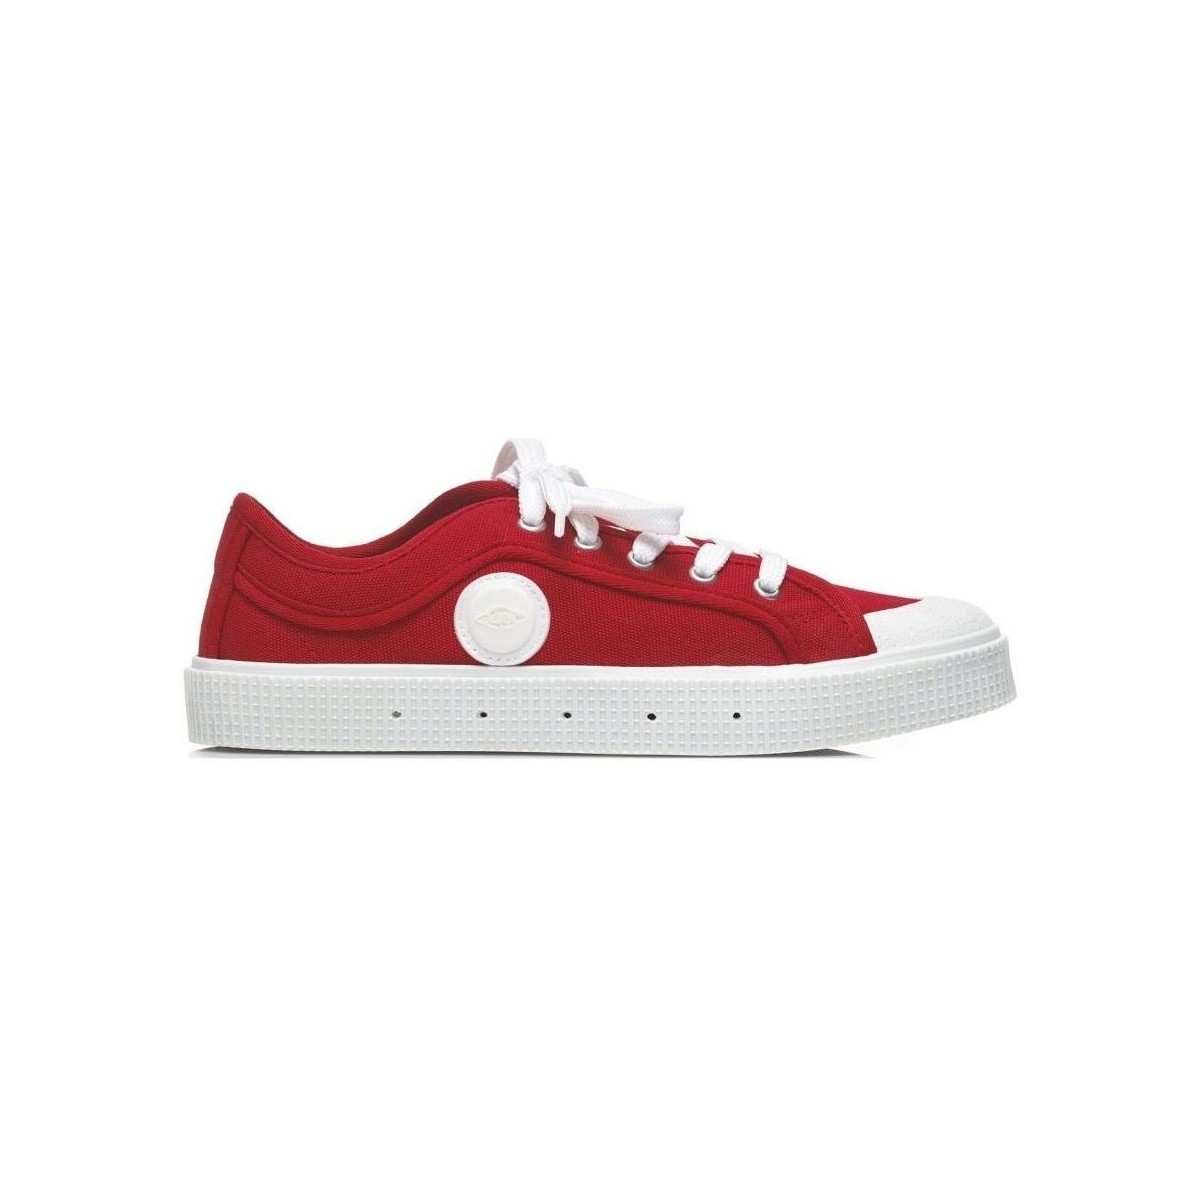 Παπούτσια Άνδρας Χαμηλά Sneakers Sanjo K200 - Red Red